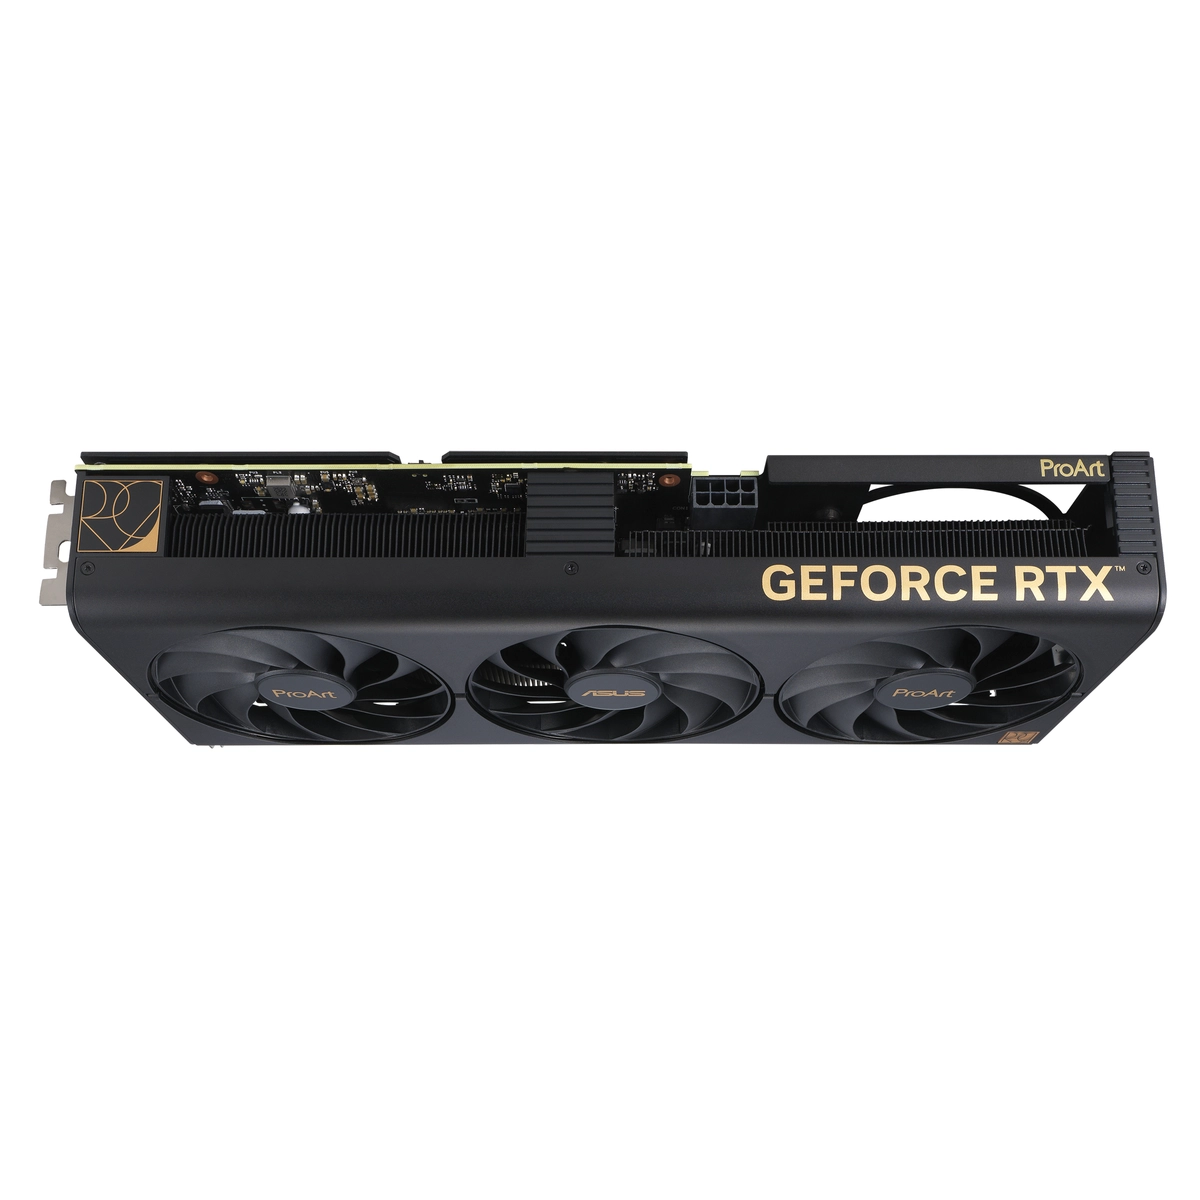 GPU NV PROART-RTX4060TI-16G Fan